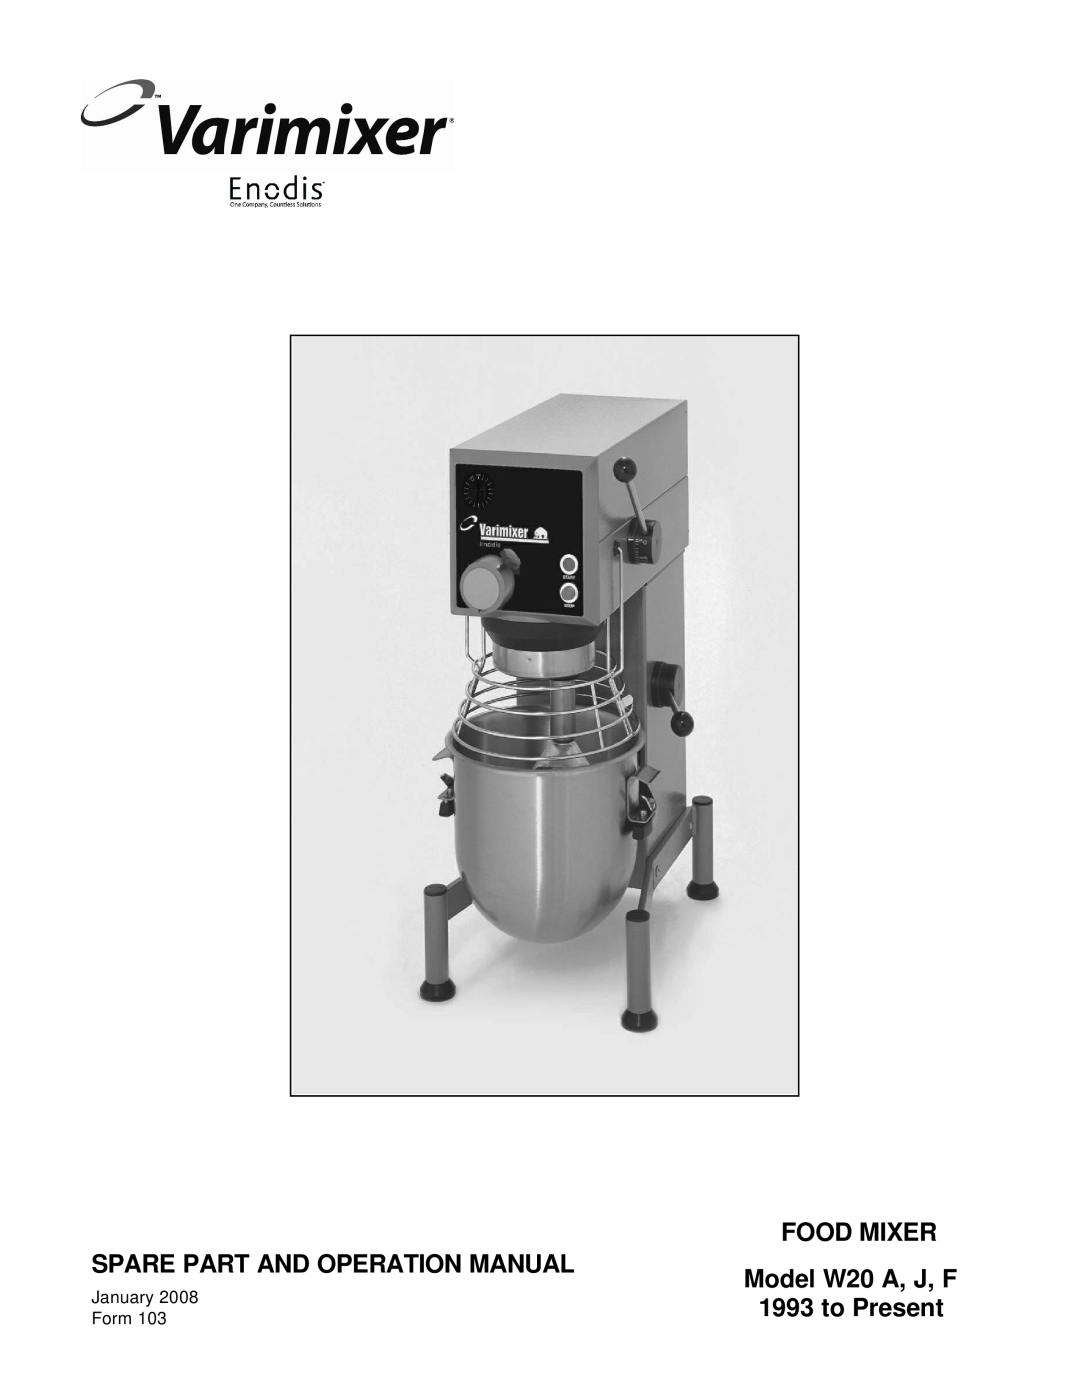 Varimixer manual Food Mixer, Model W20 A, J, F, to Present 